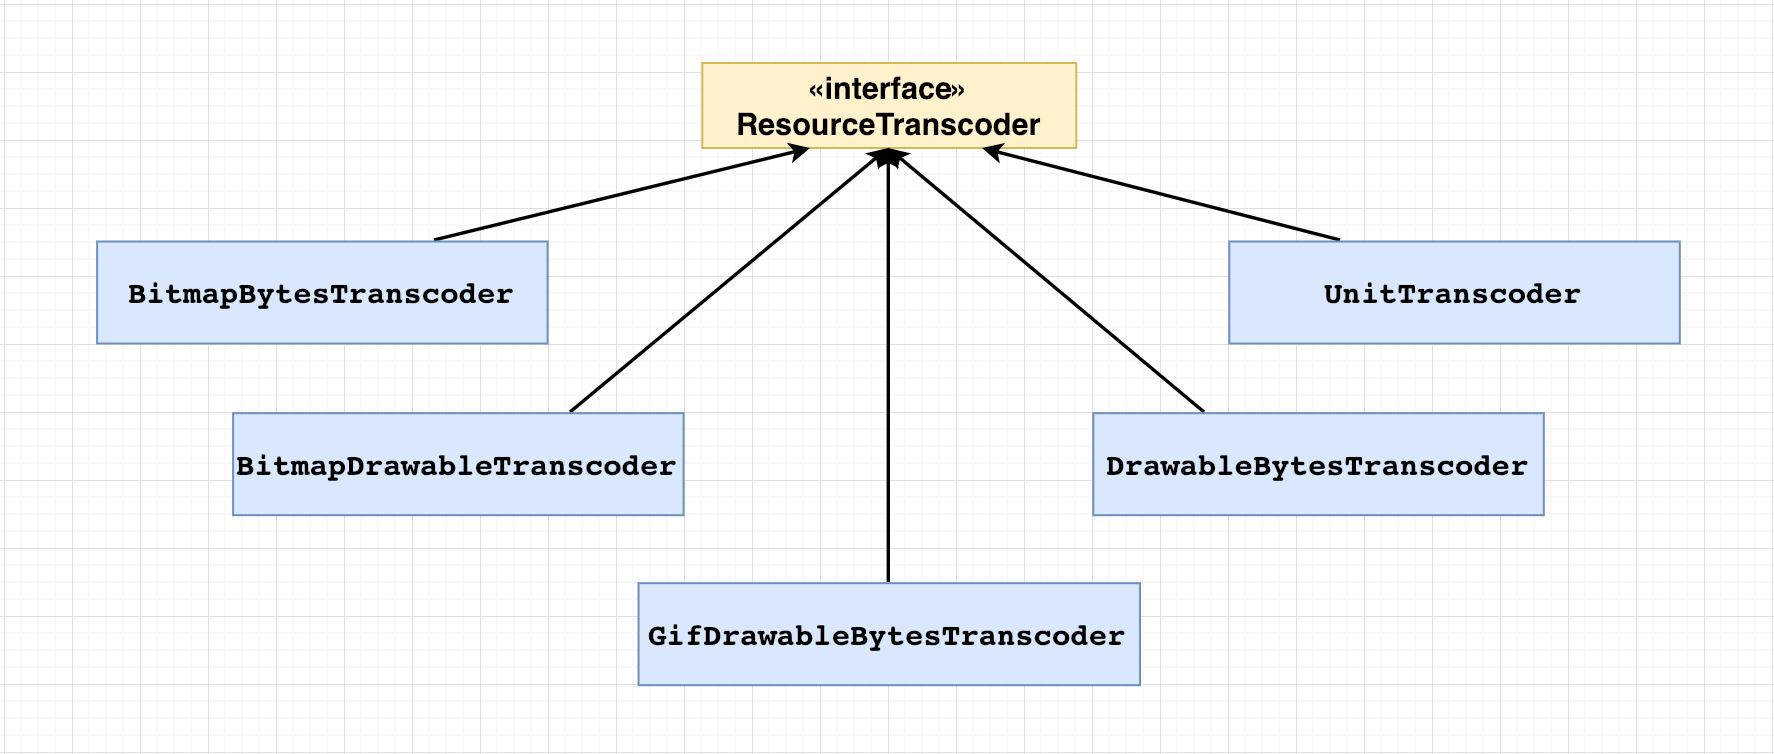 ResourceTranscoder